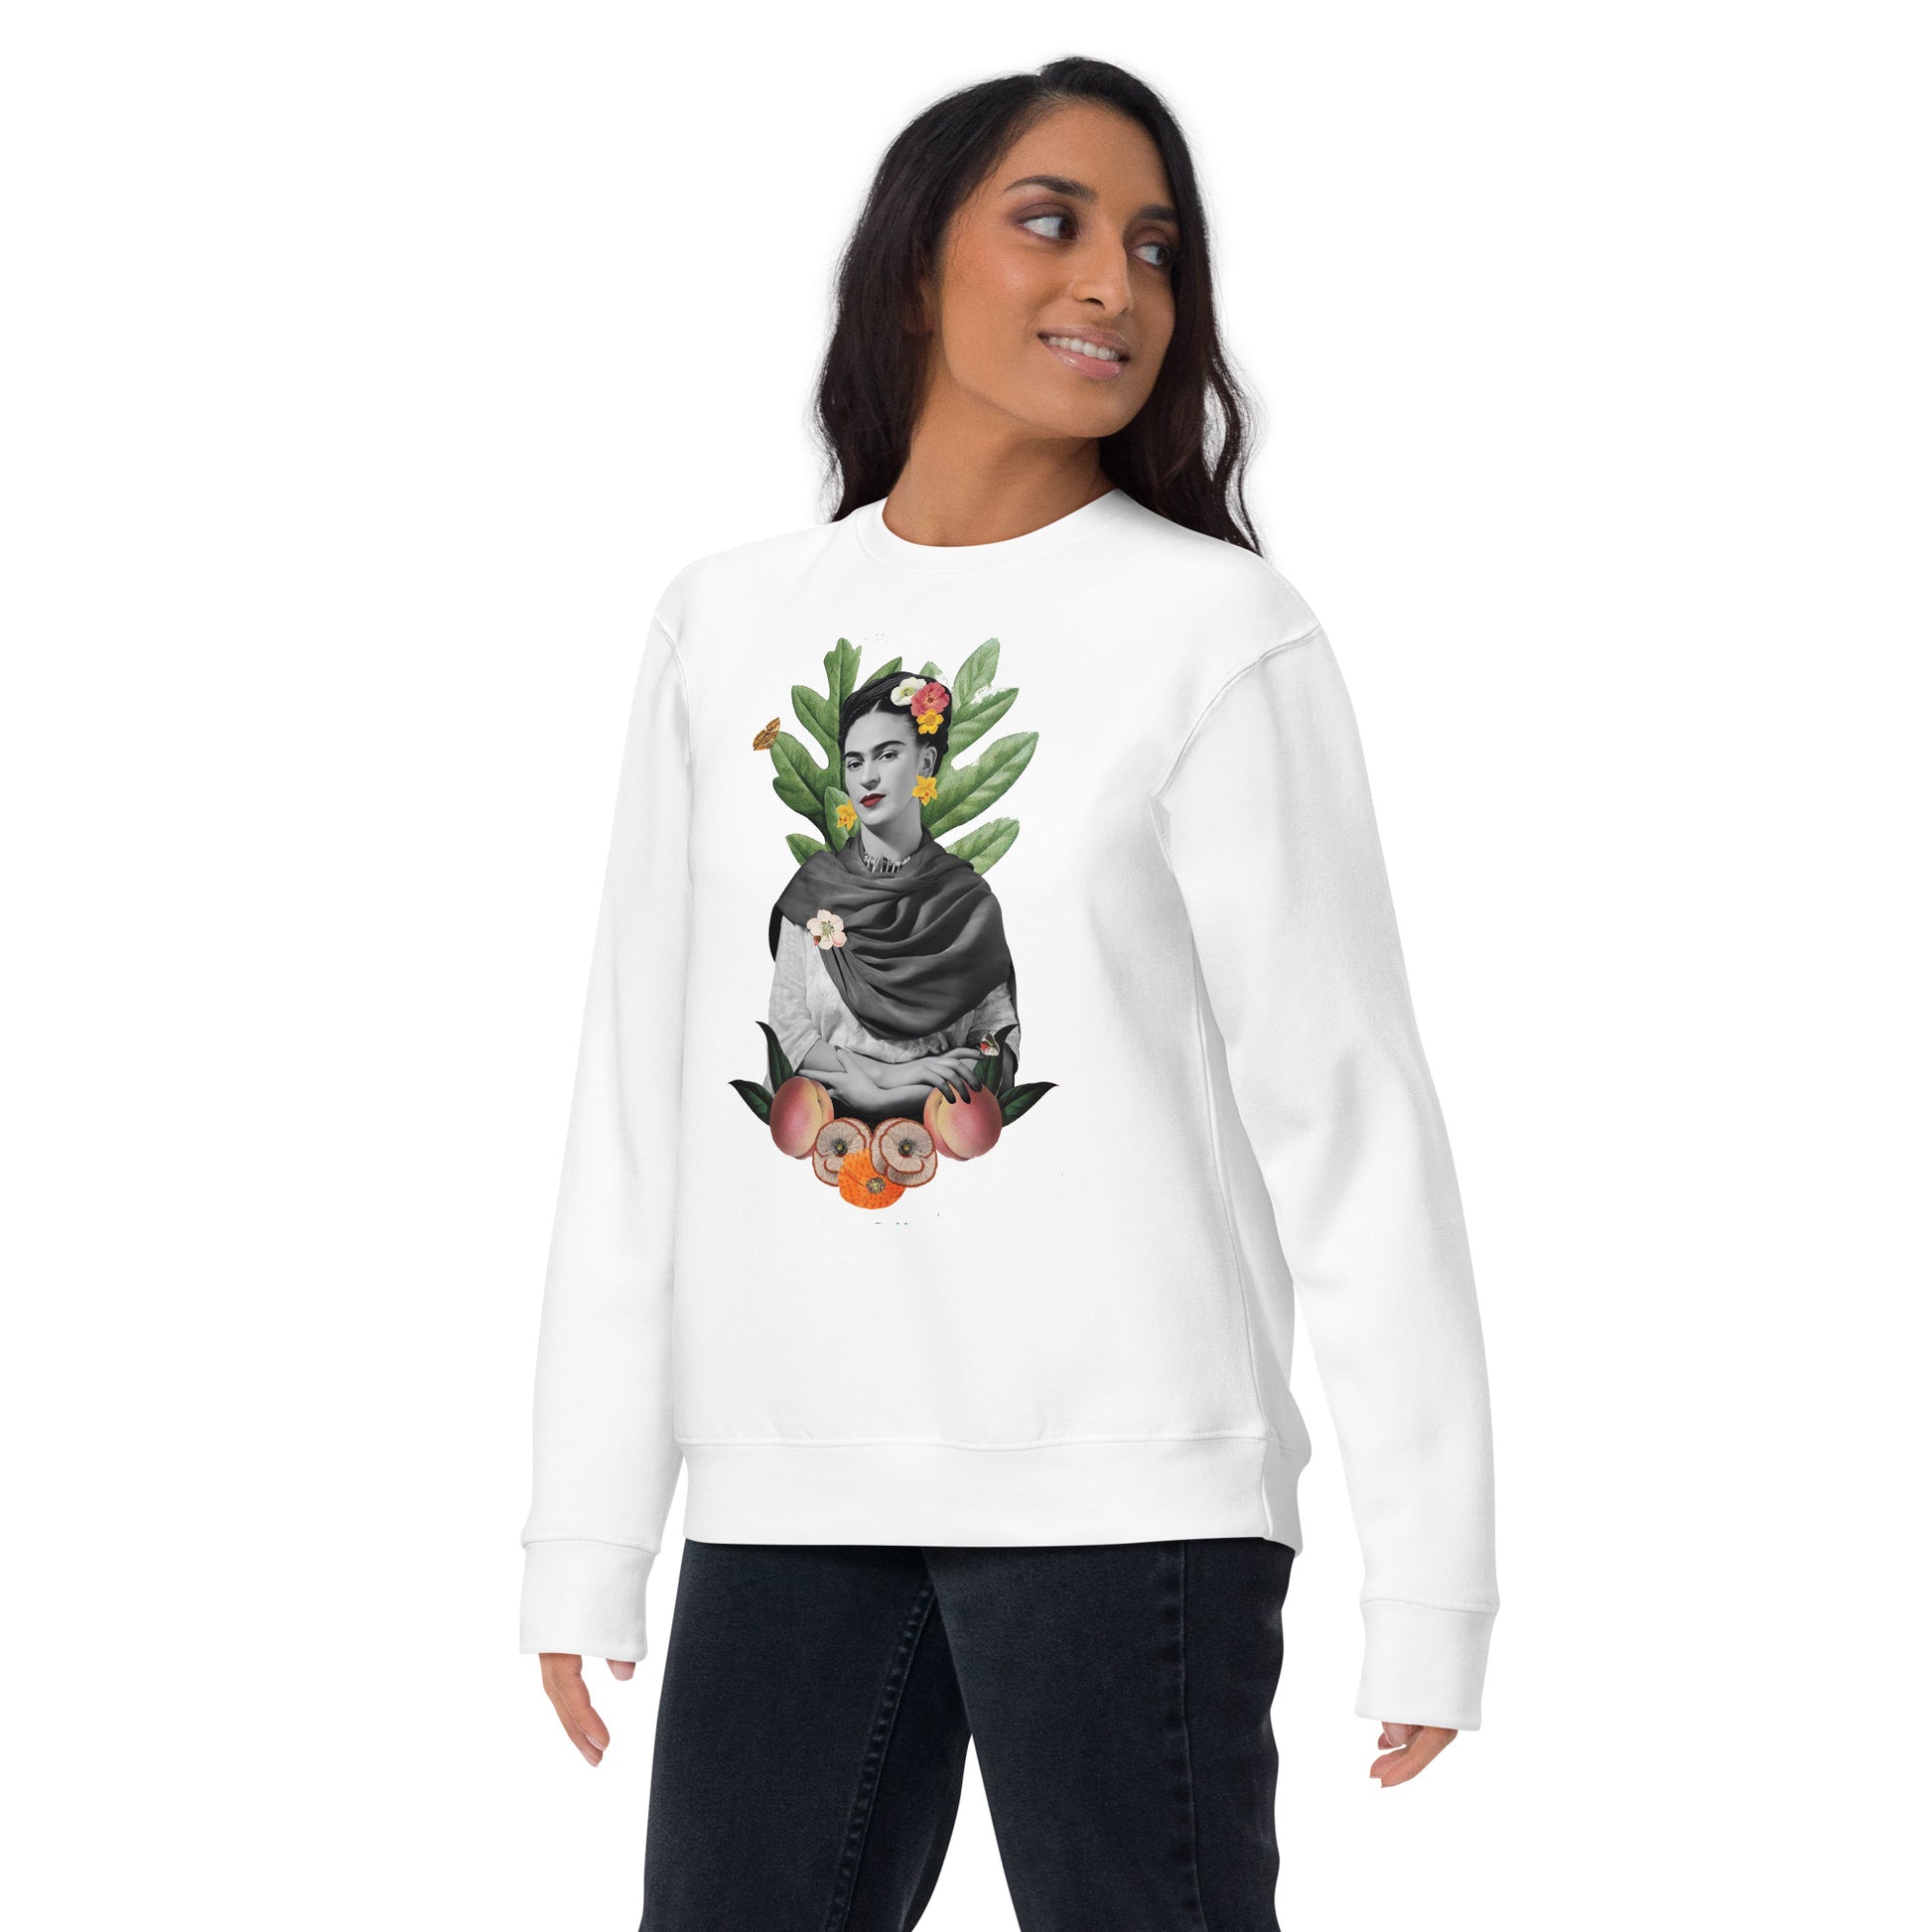 Suéter de Frida Floral ,Descubre calidad excepcional y estampados duraderos. Encuentra estilo y orgullo en cada prenda. Compra ahora!